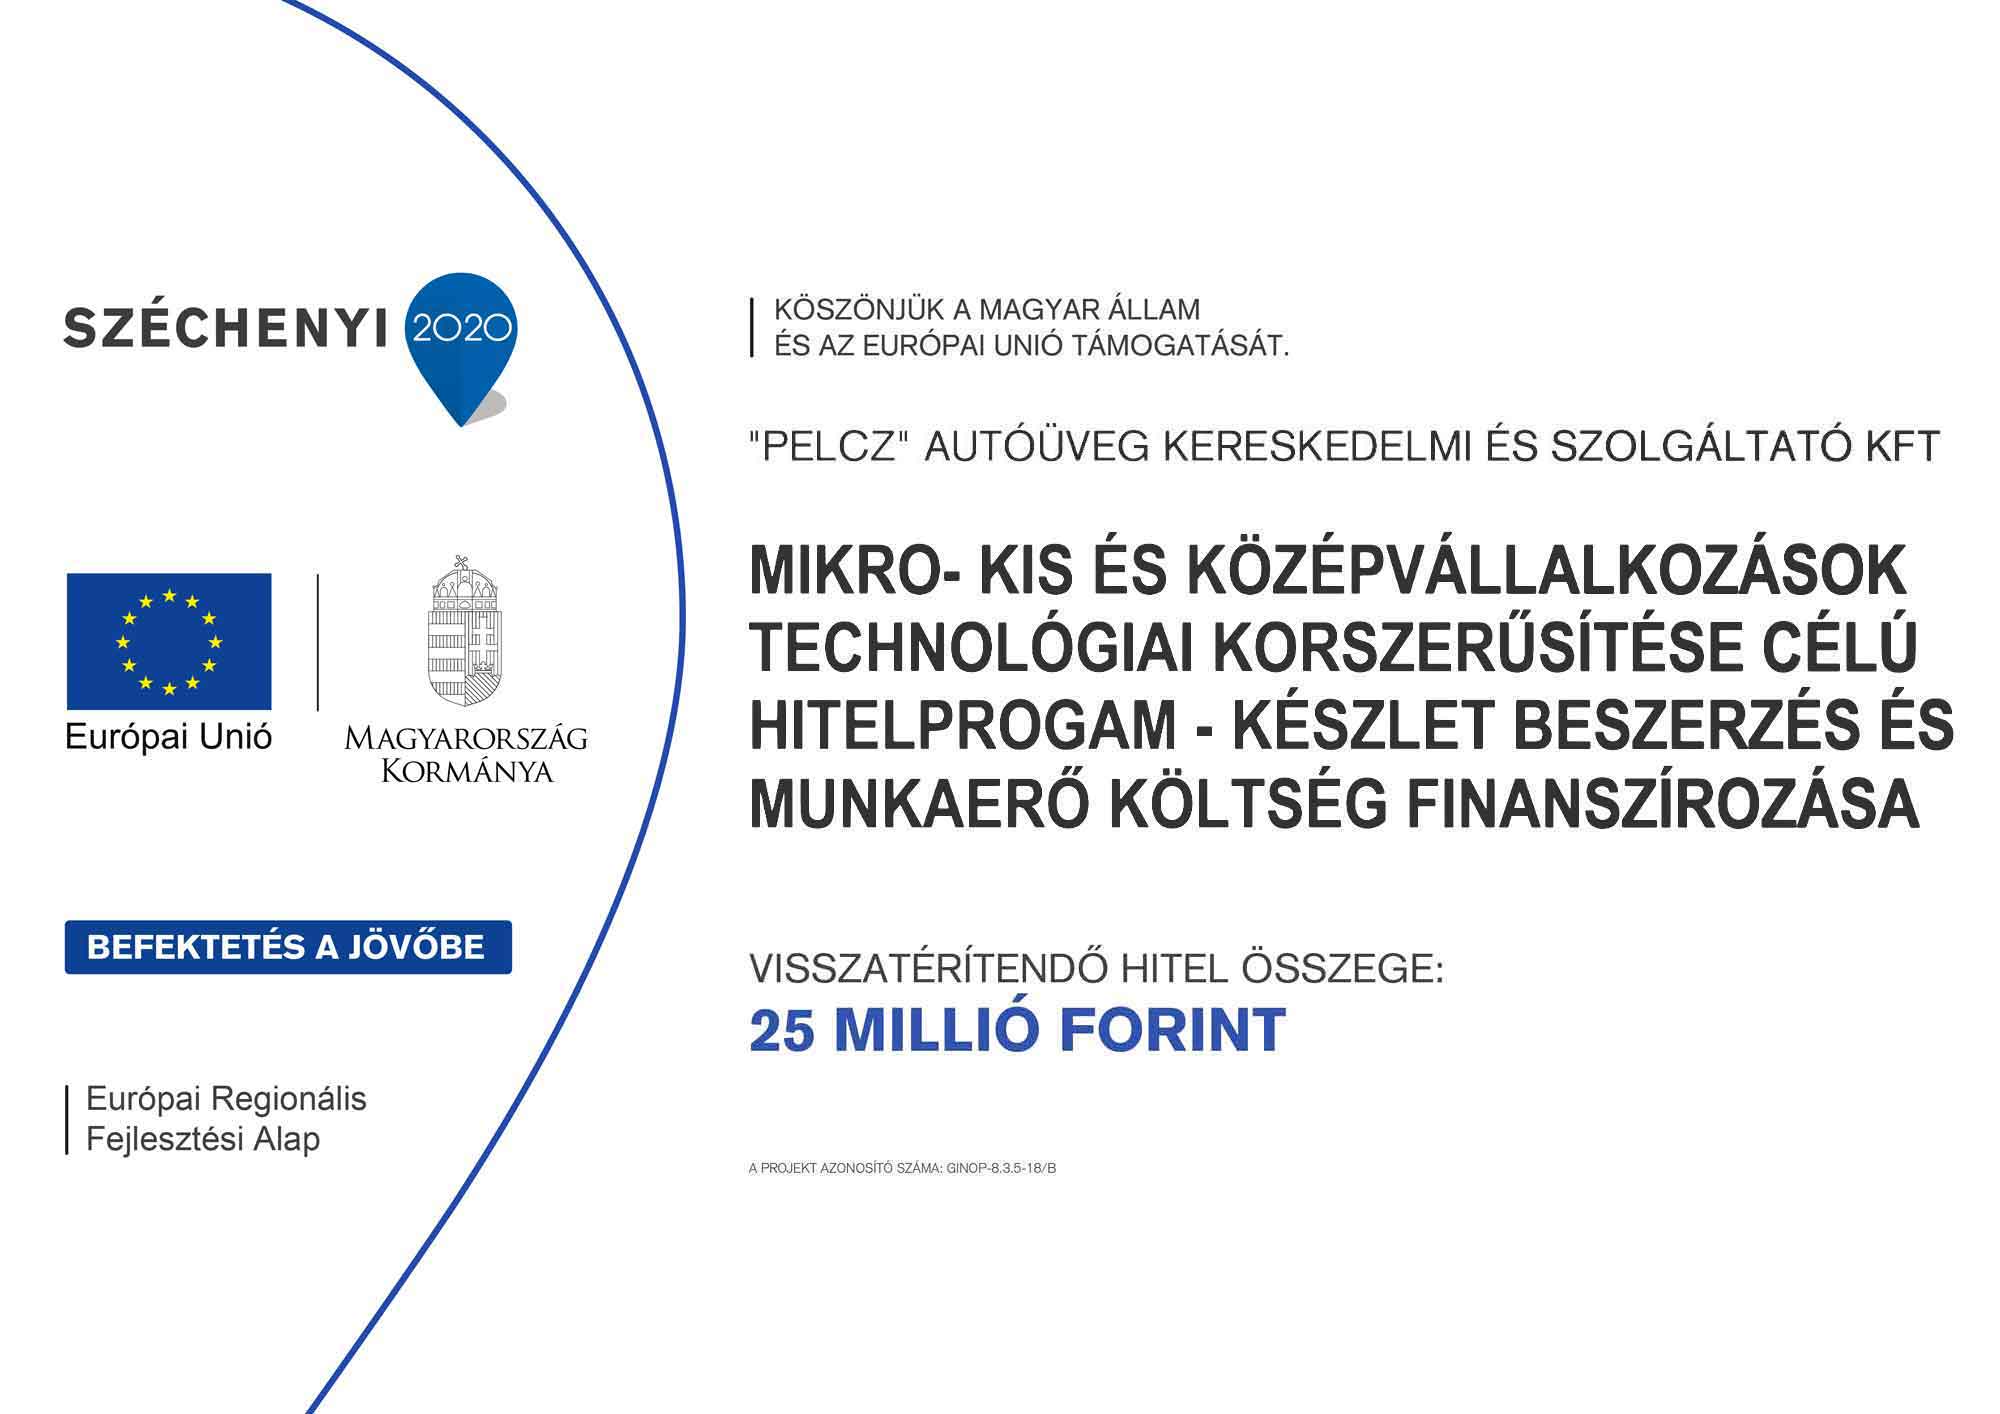 Mikro-, kis és középvállalkozások technológiai korszerűsítése célú Hitelprogram